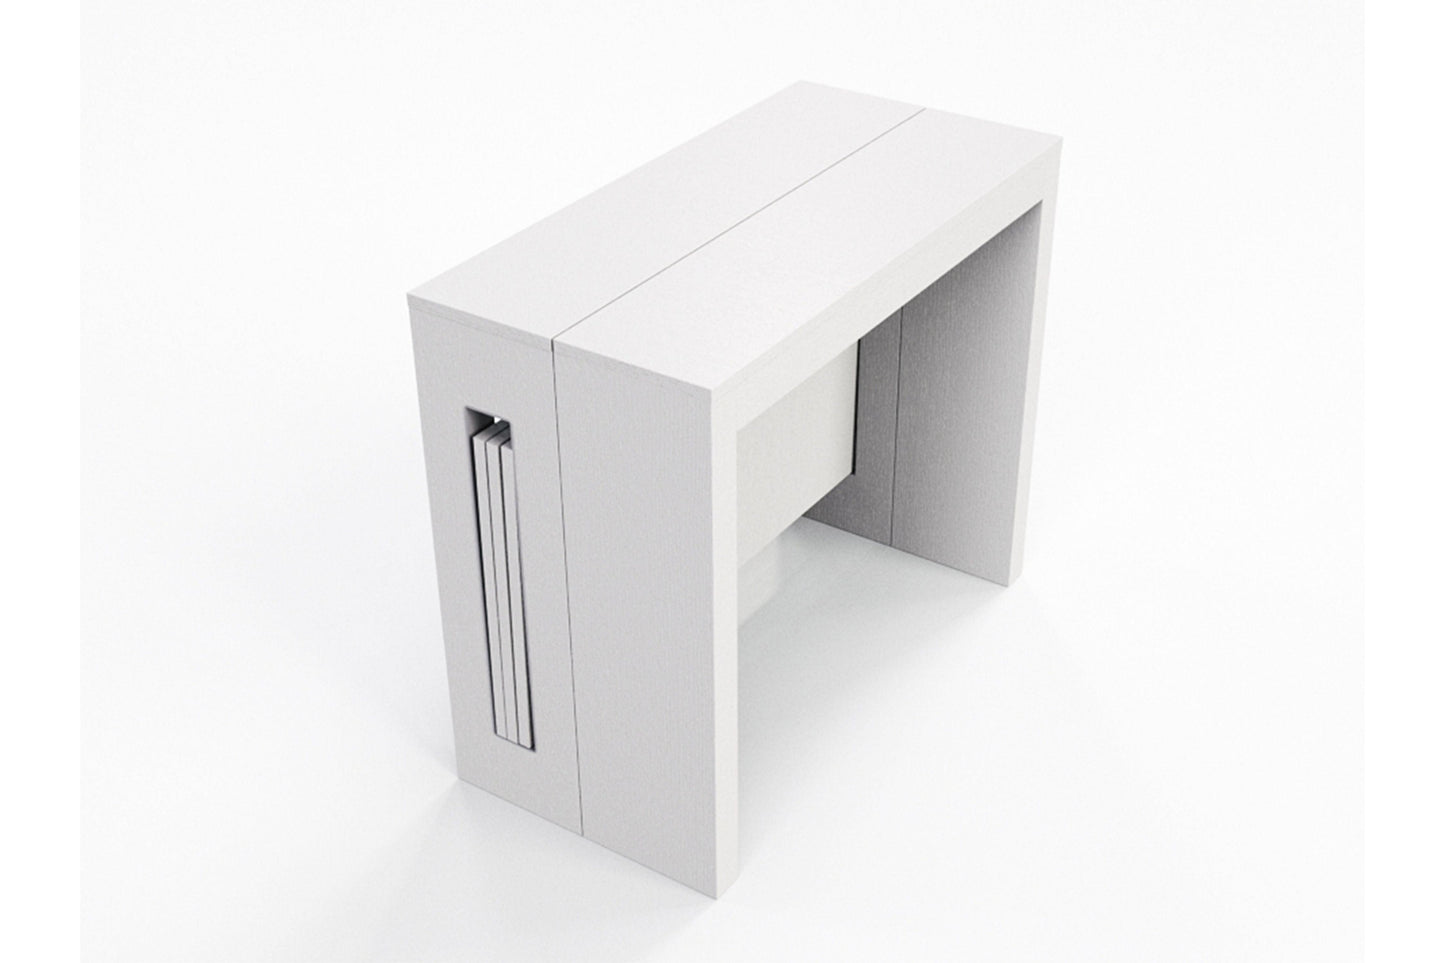 Elasto Expandable Console Table Model TC-542B - Venini Furniture 